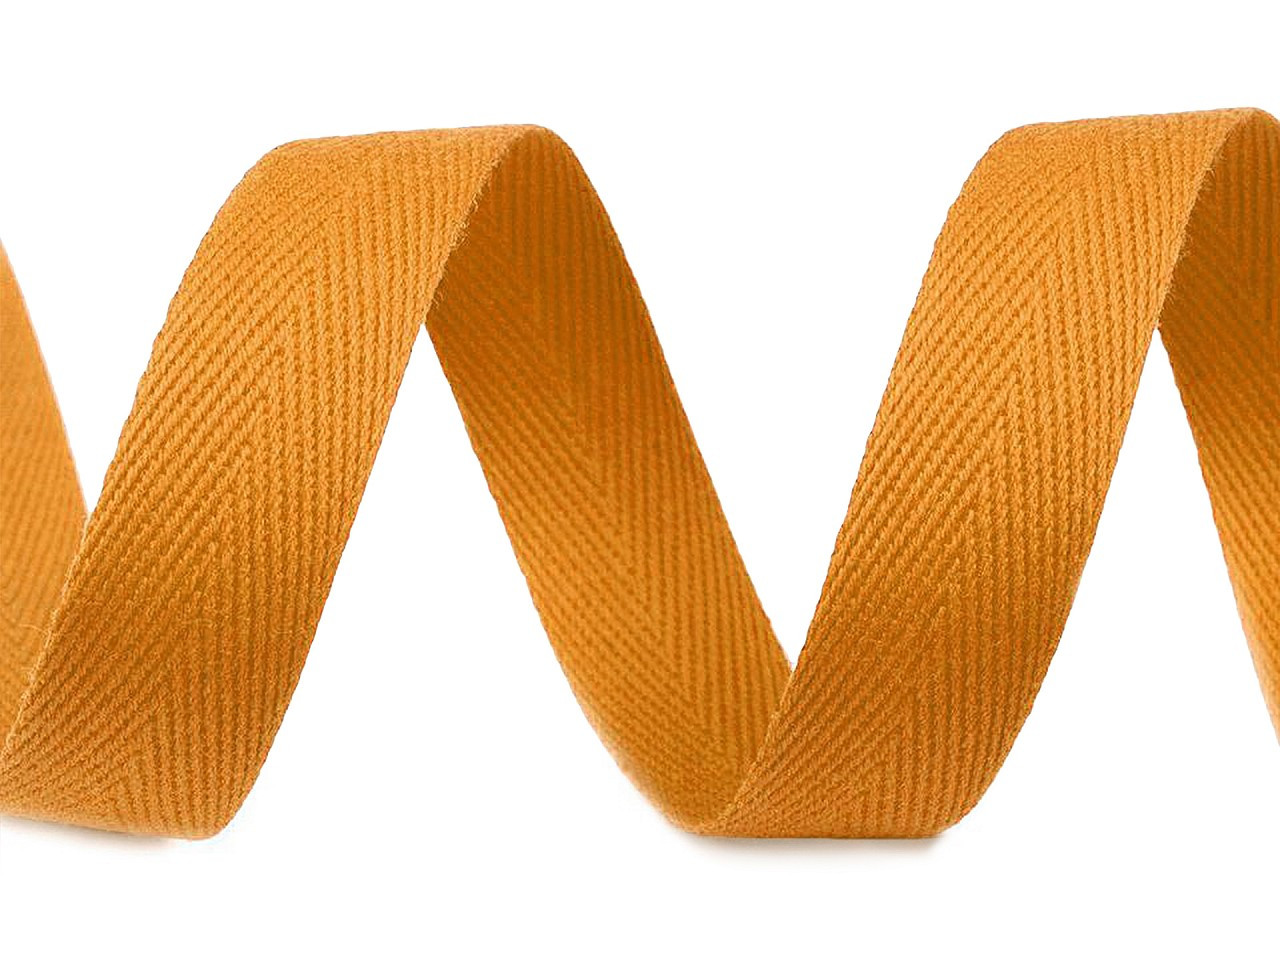 Keprovka - tkaloun šíře 16 mm, barva 4301 oranžovožlutá